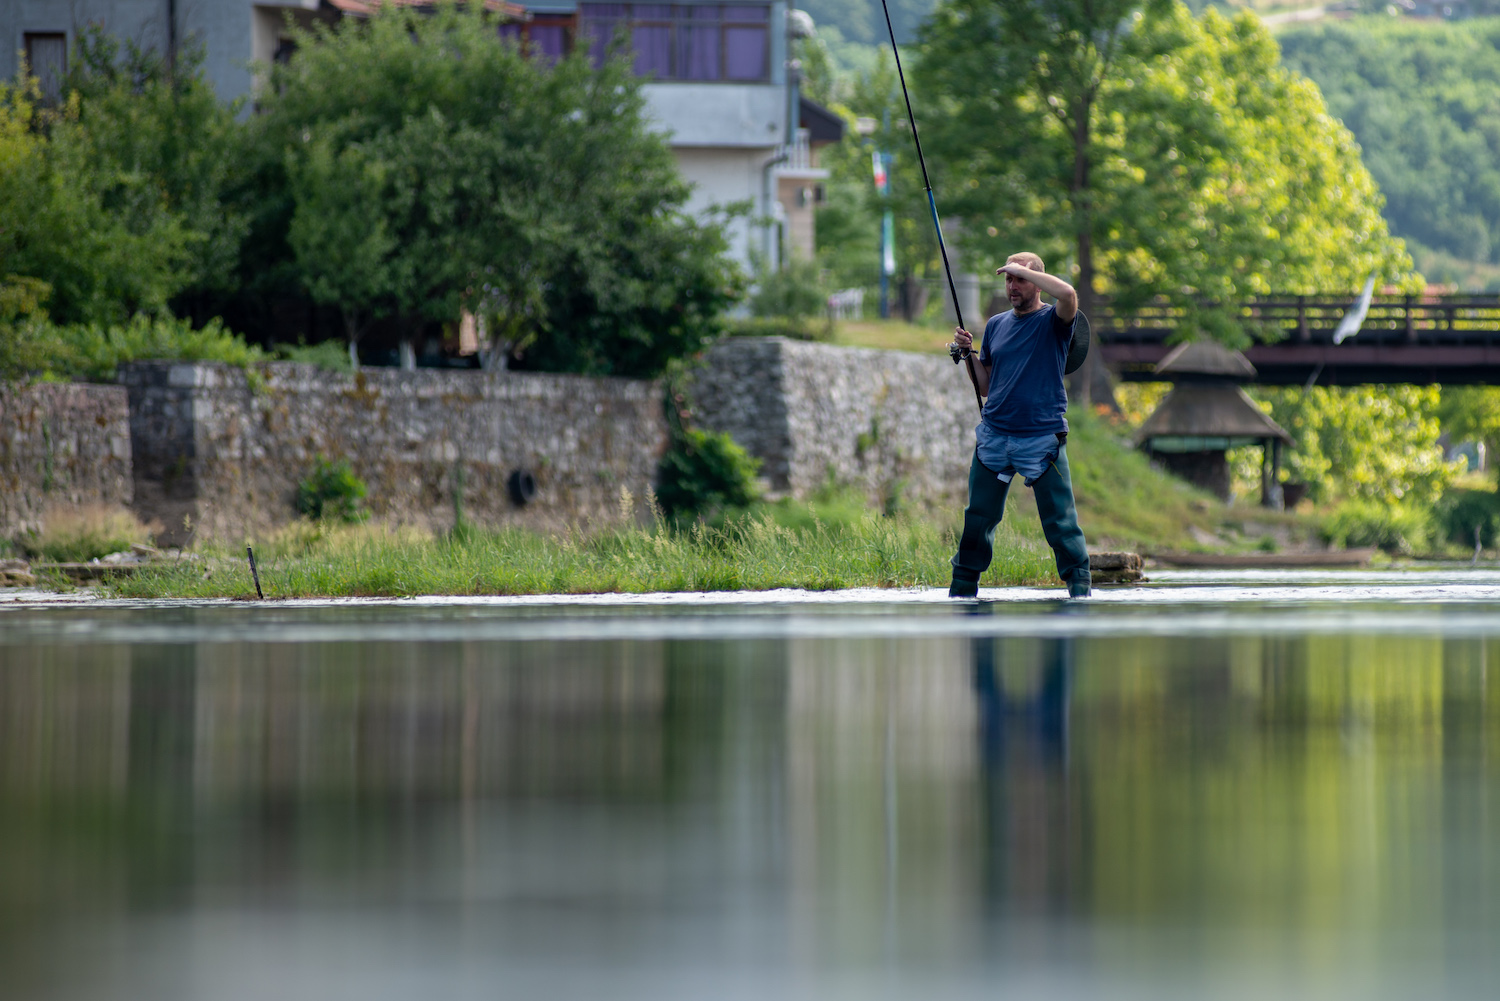 Šehić fishing on the river Una. Image: Dino Isaković